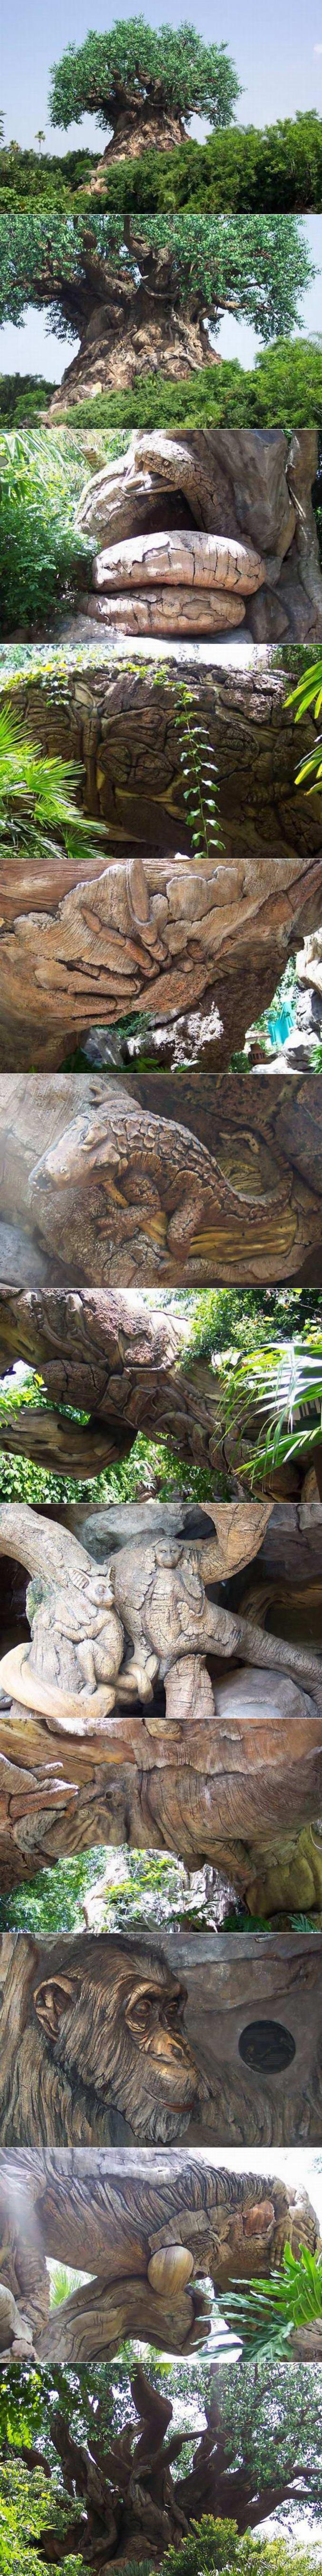 Des animaux sculptés à même un arbre.